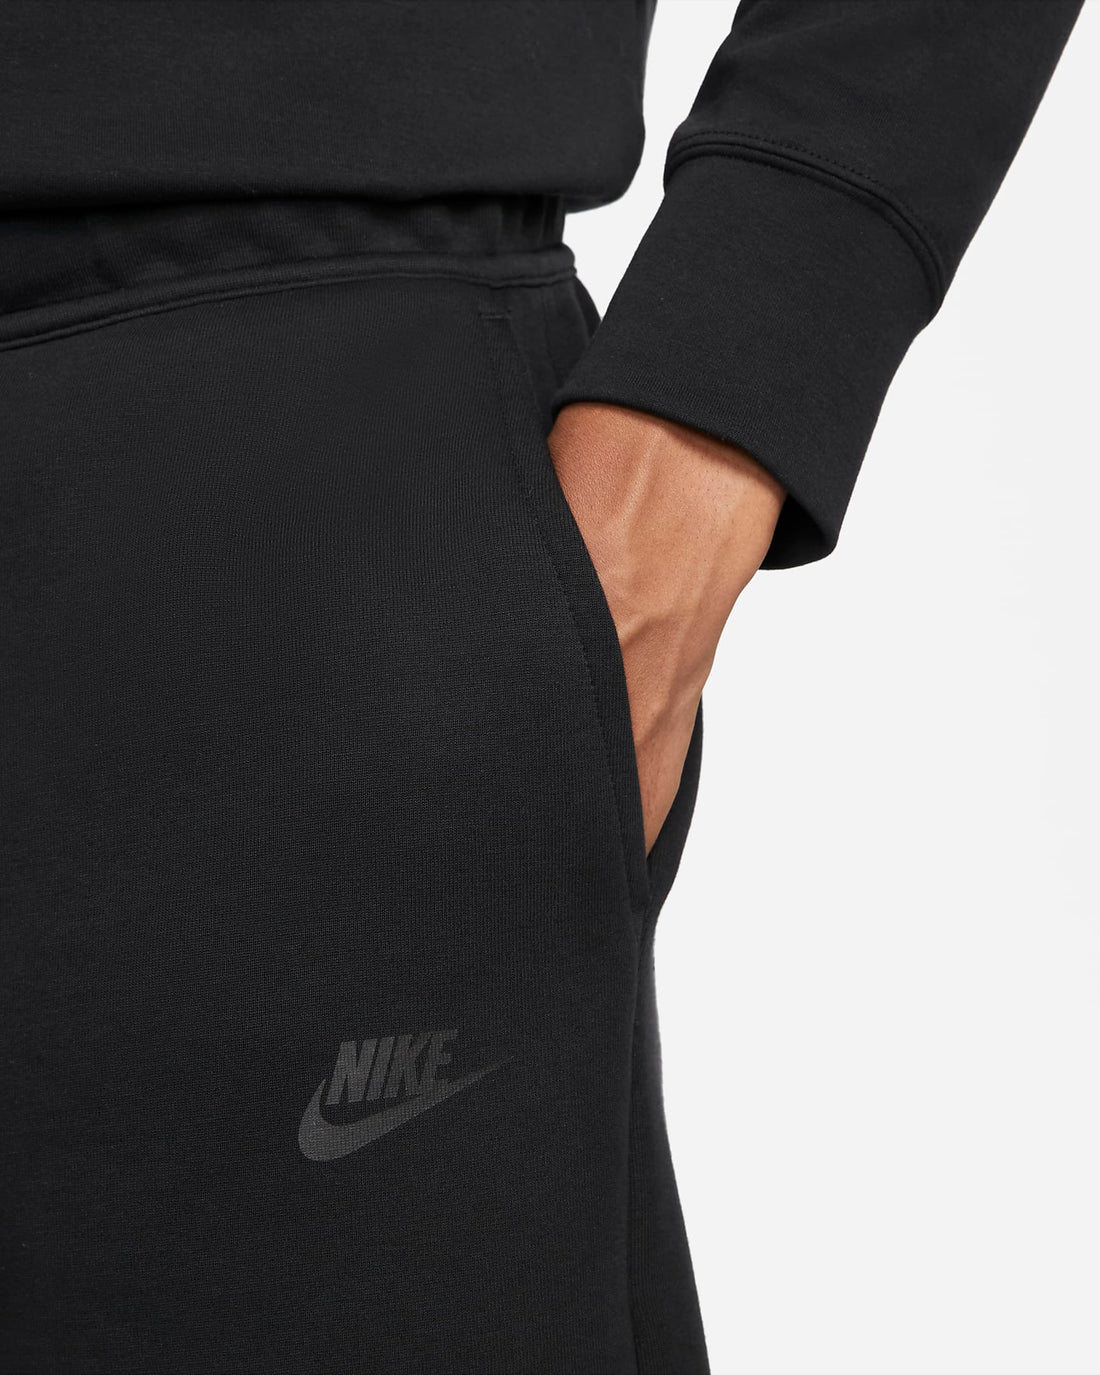 Nike Men's Sportswear Tech Fleece Short Black – Stencil